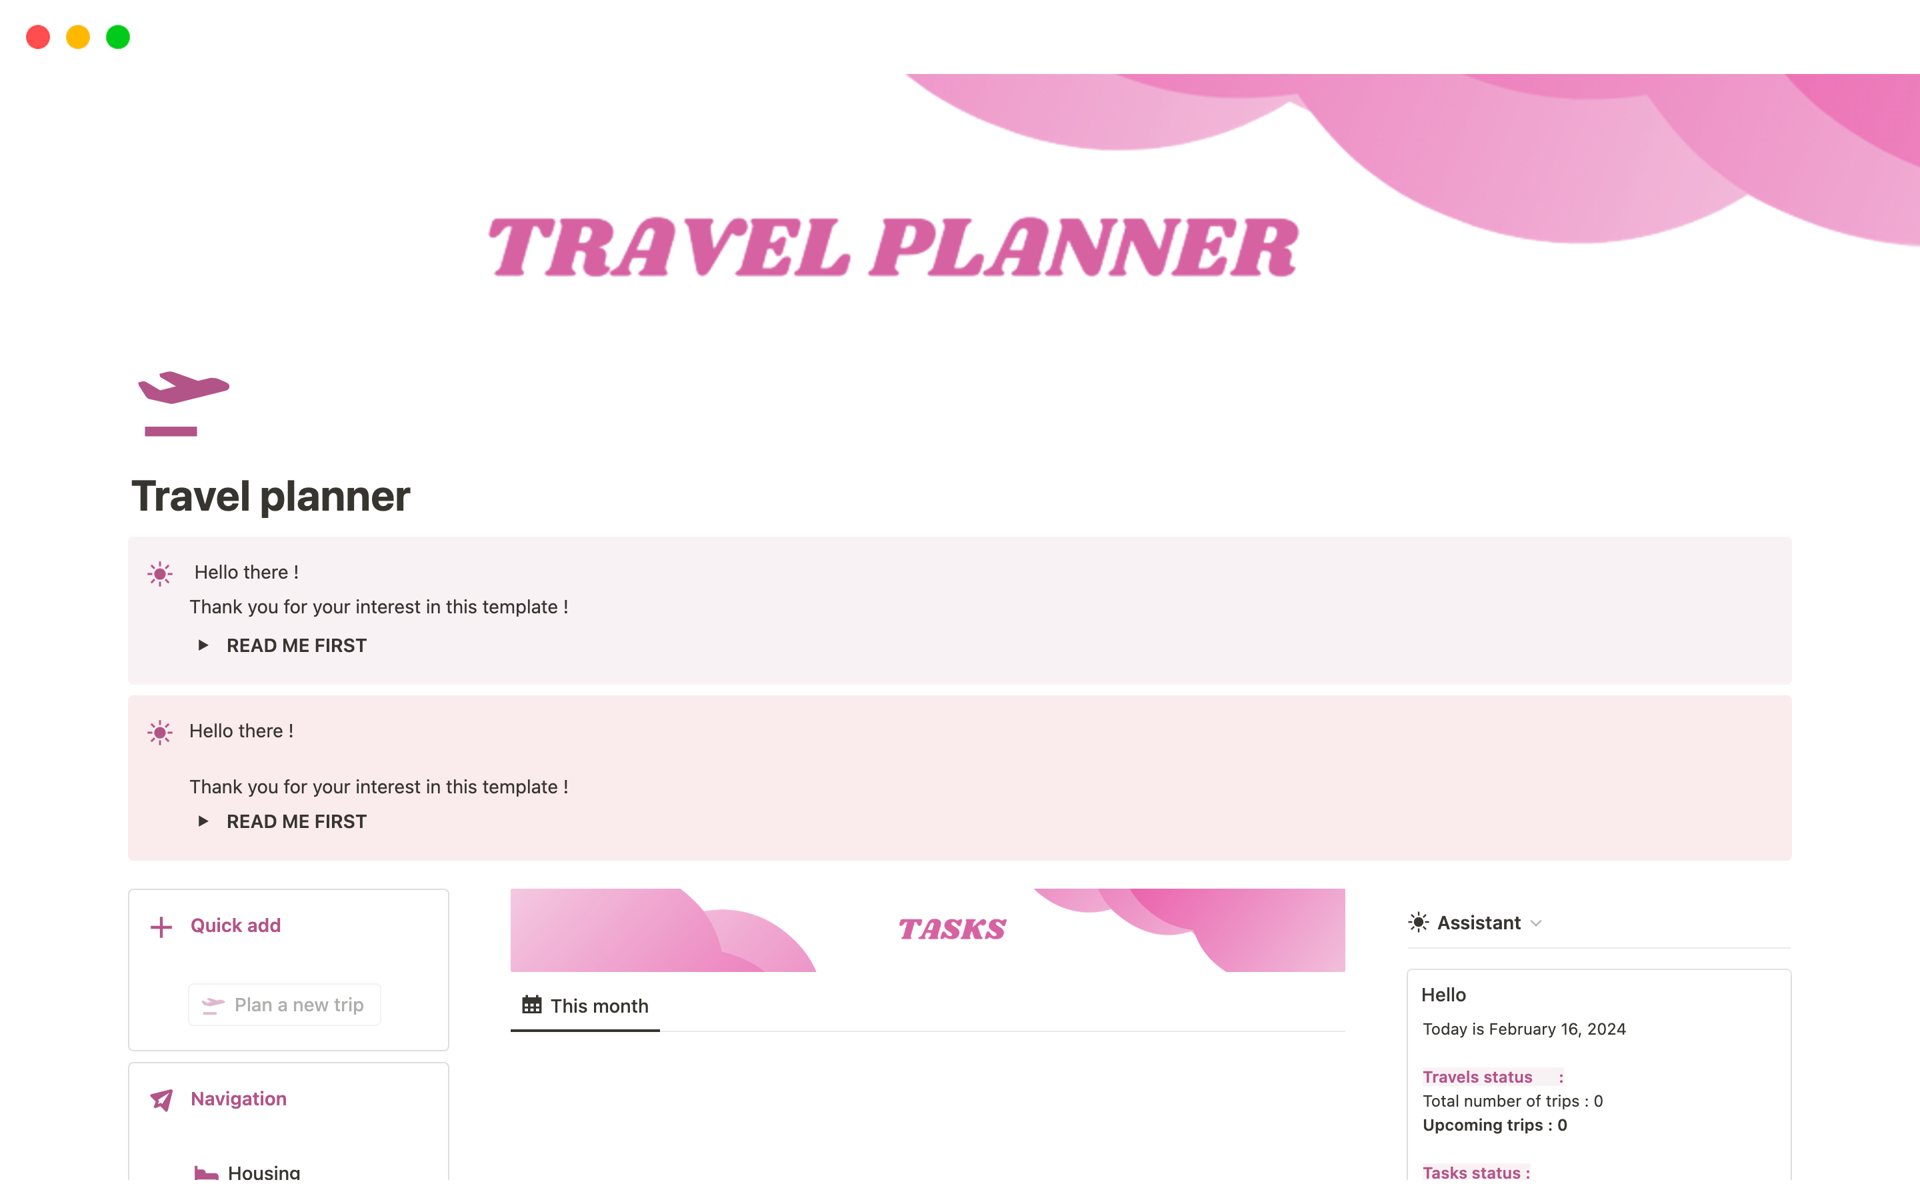 Aperçu du modèle de Travel planner